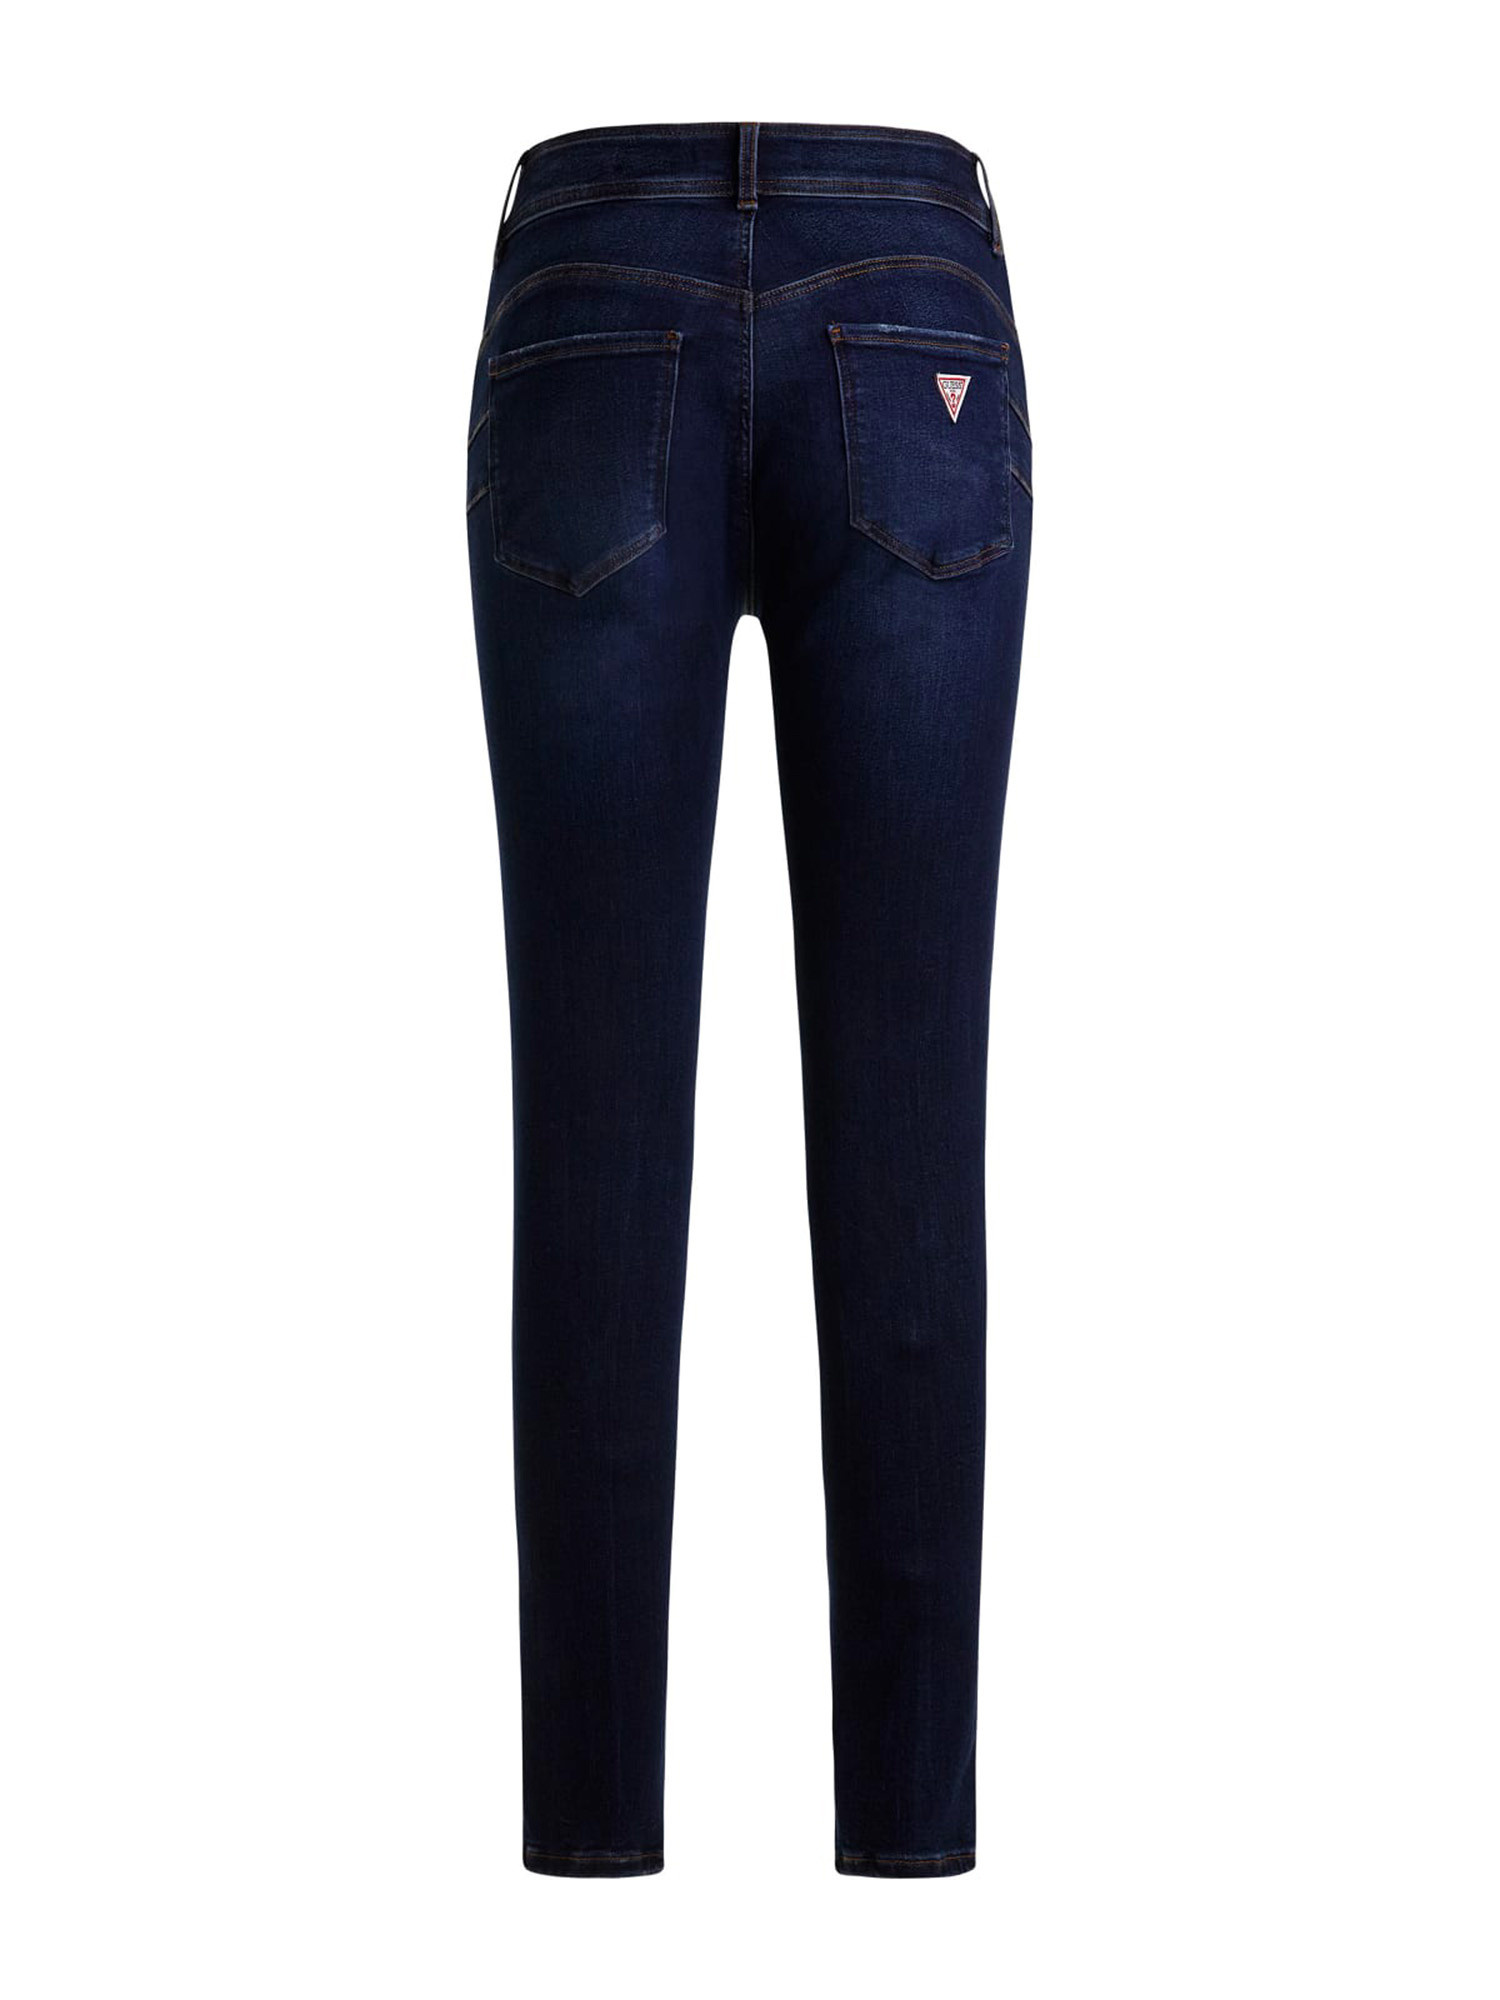 Guess - 5-pocket skinny jeans, Dark Blue, large image number 1